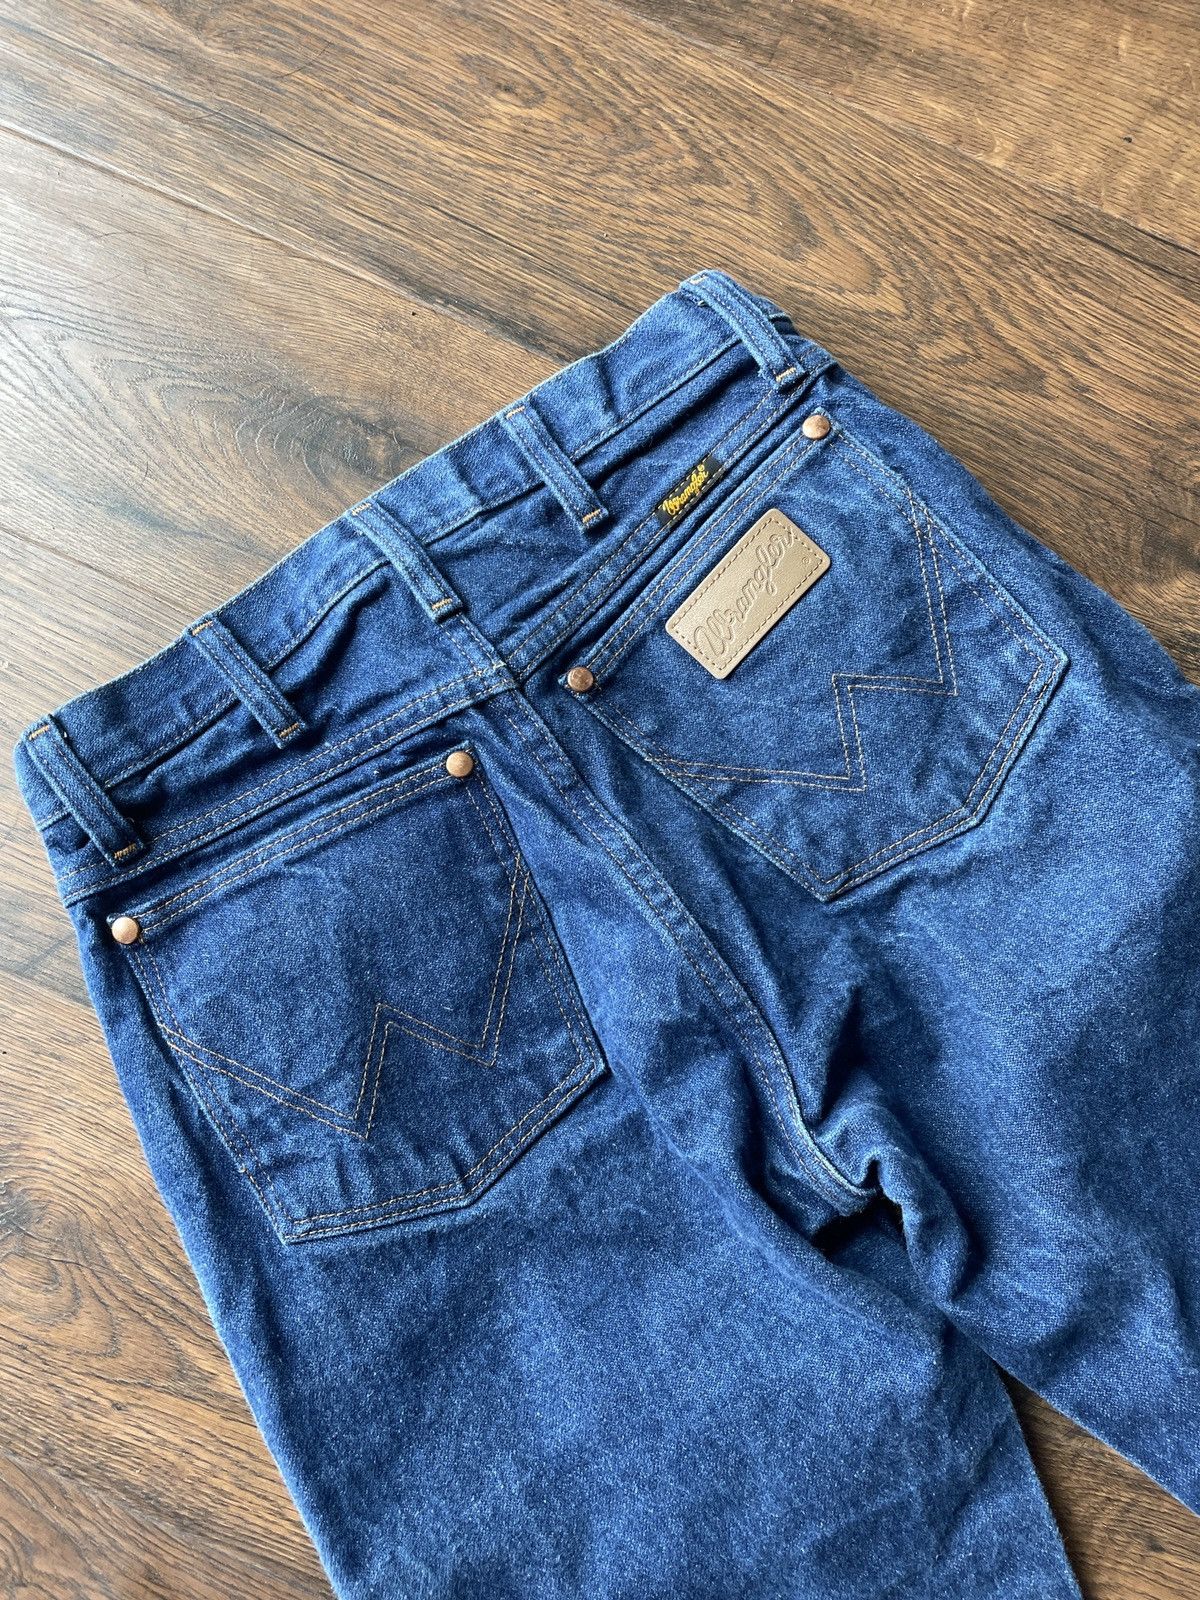 Wrangler wrangler jeans Size US 29 - 4 Thumbnail